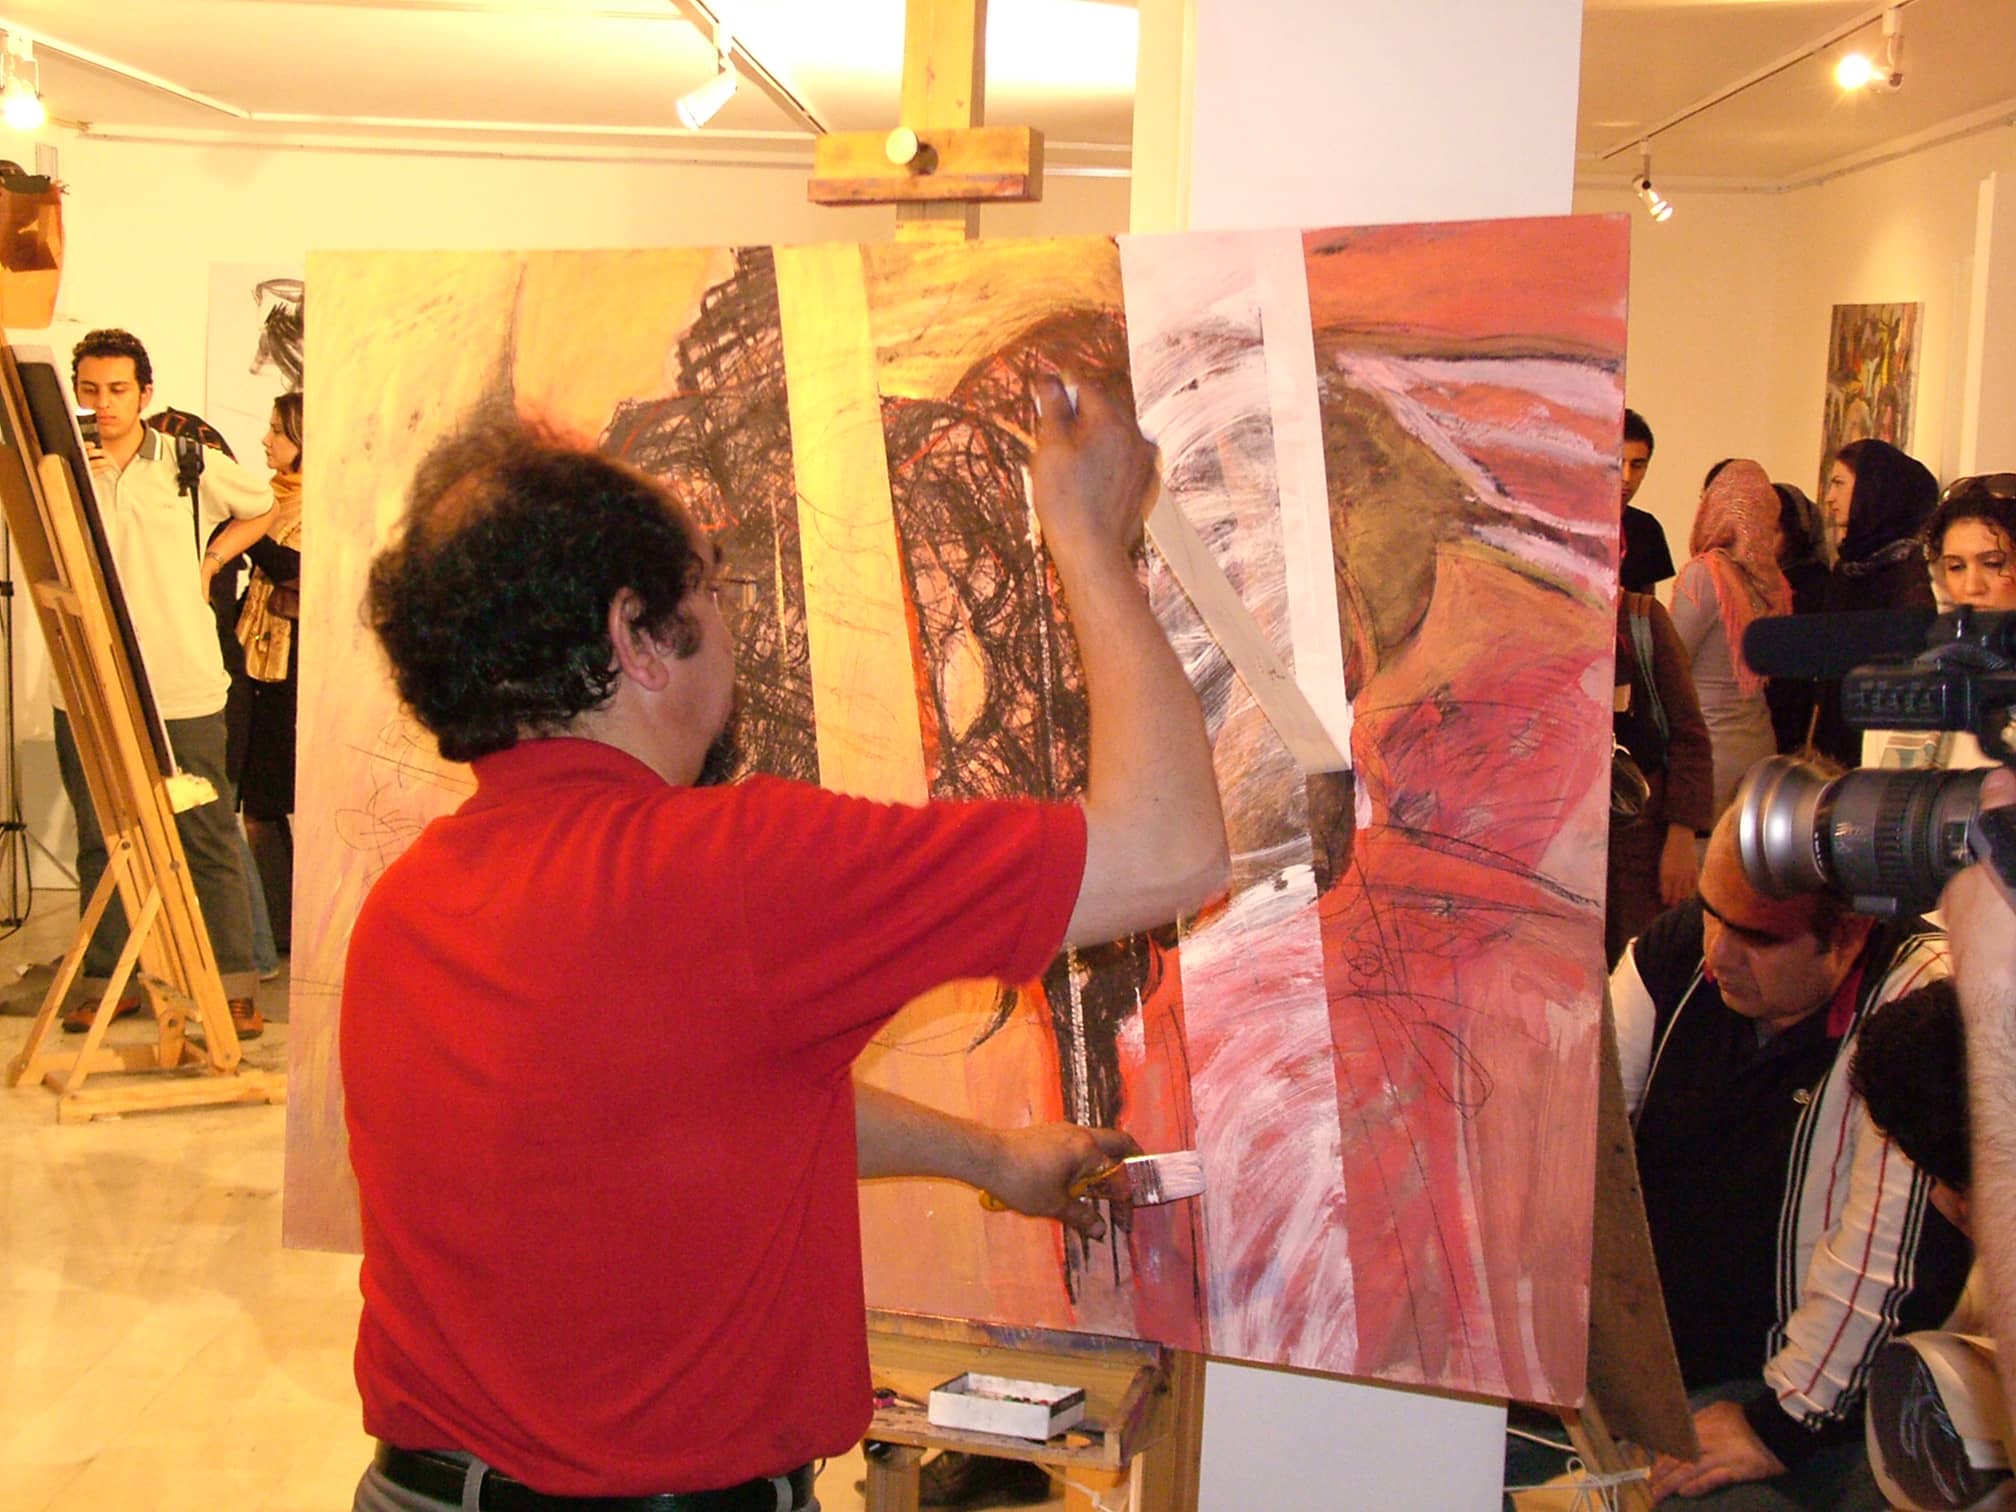 Painting Workshop - Maat Gallery - Tehran, Iran 2004